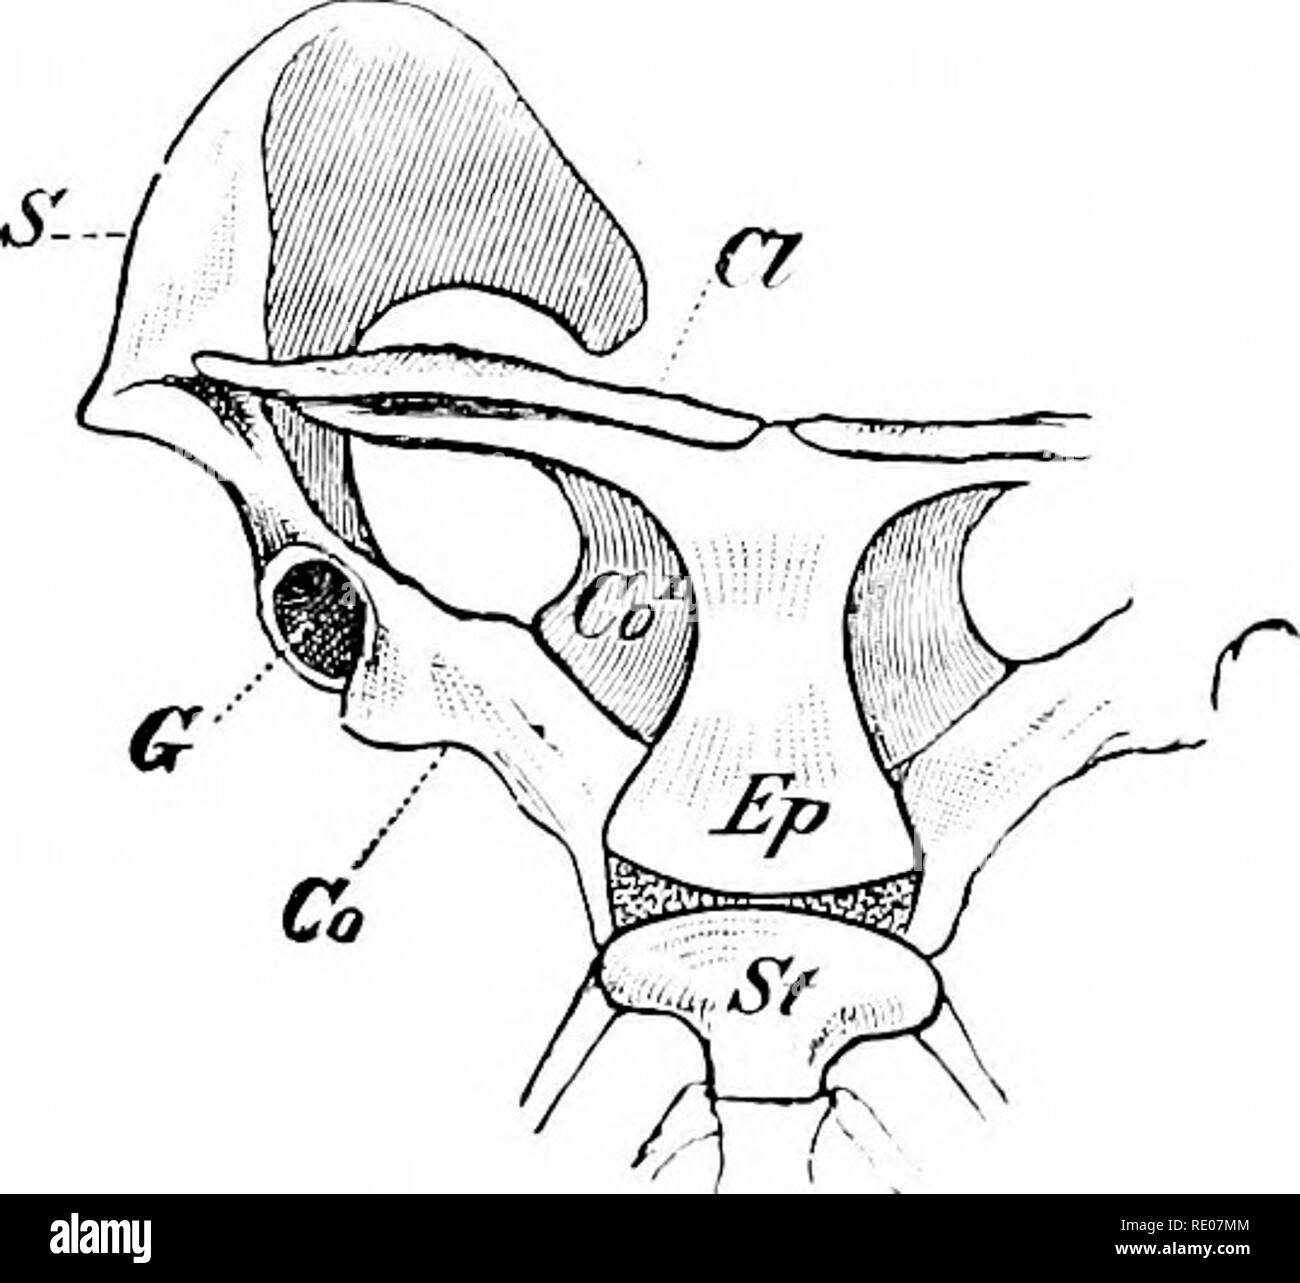 Un manuel de zoologie. Zoologie. 622 ACCORD À A. deux côtés se rapprochent  pour un seul os allongé verticalement à l'intérieur de la cloison nasale ;  le palatin et ptérygoïde sont